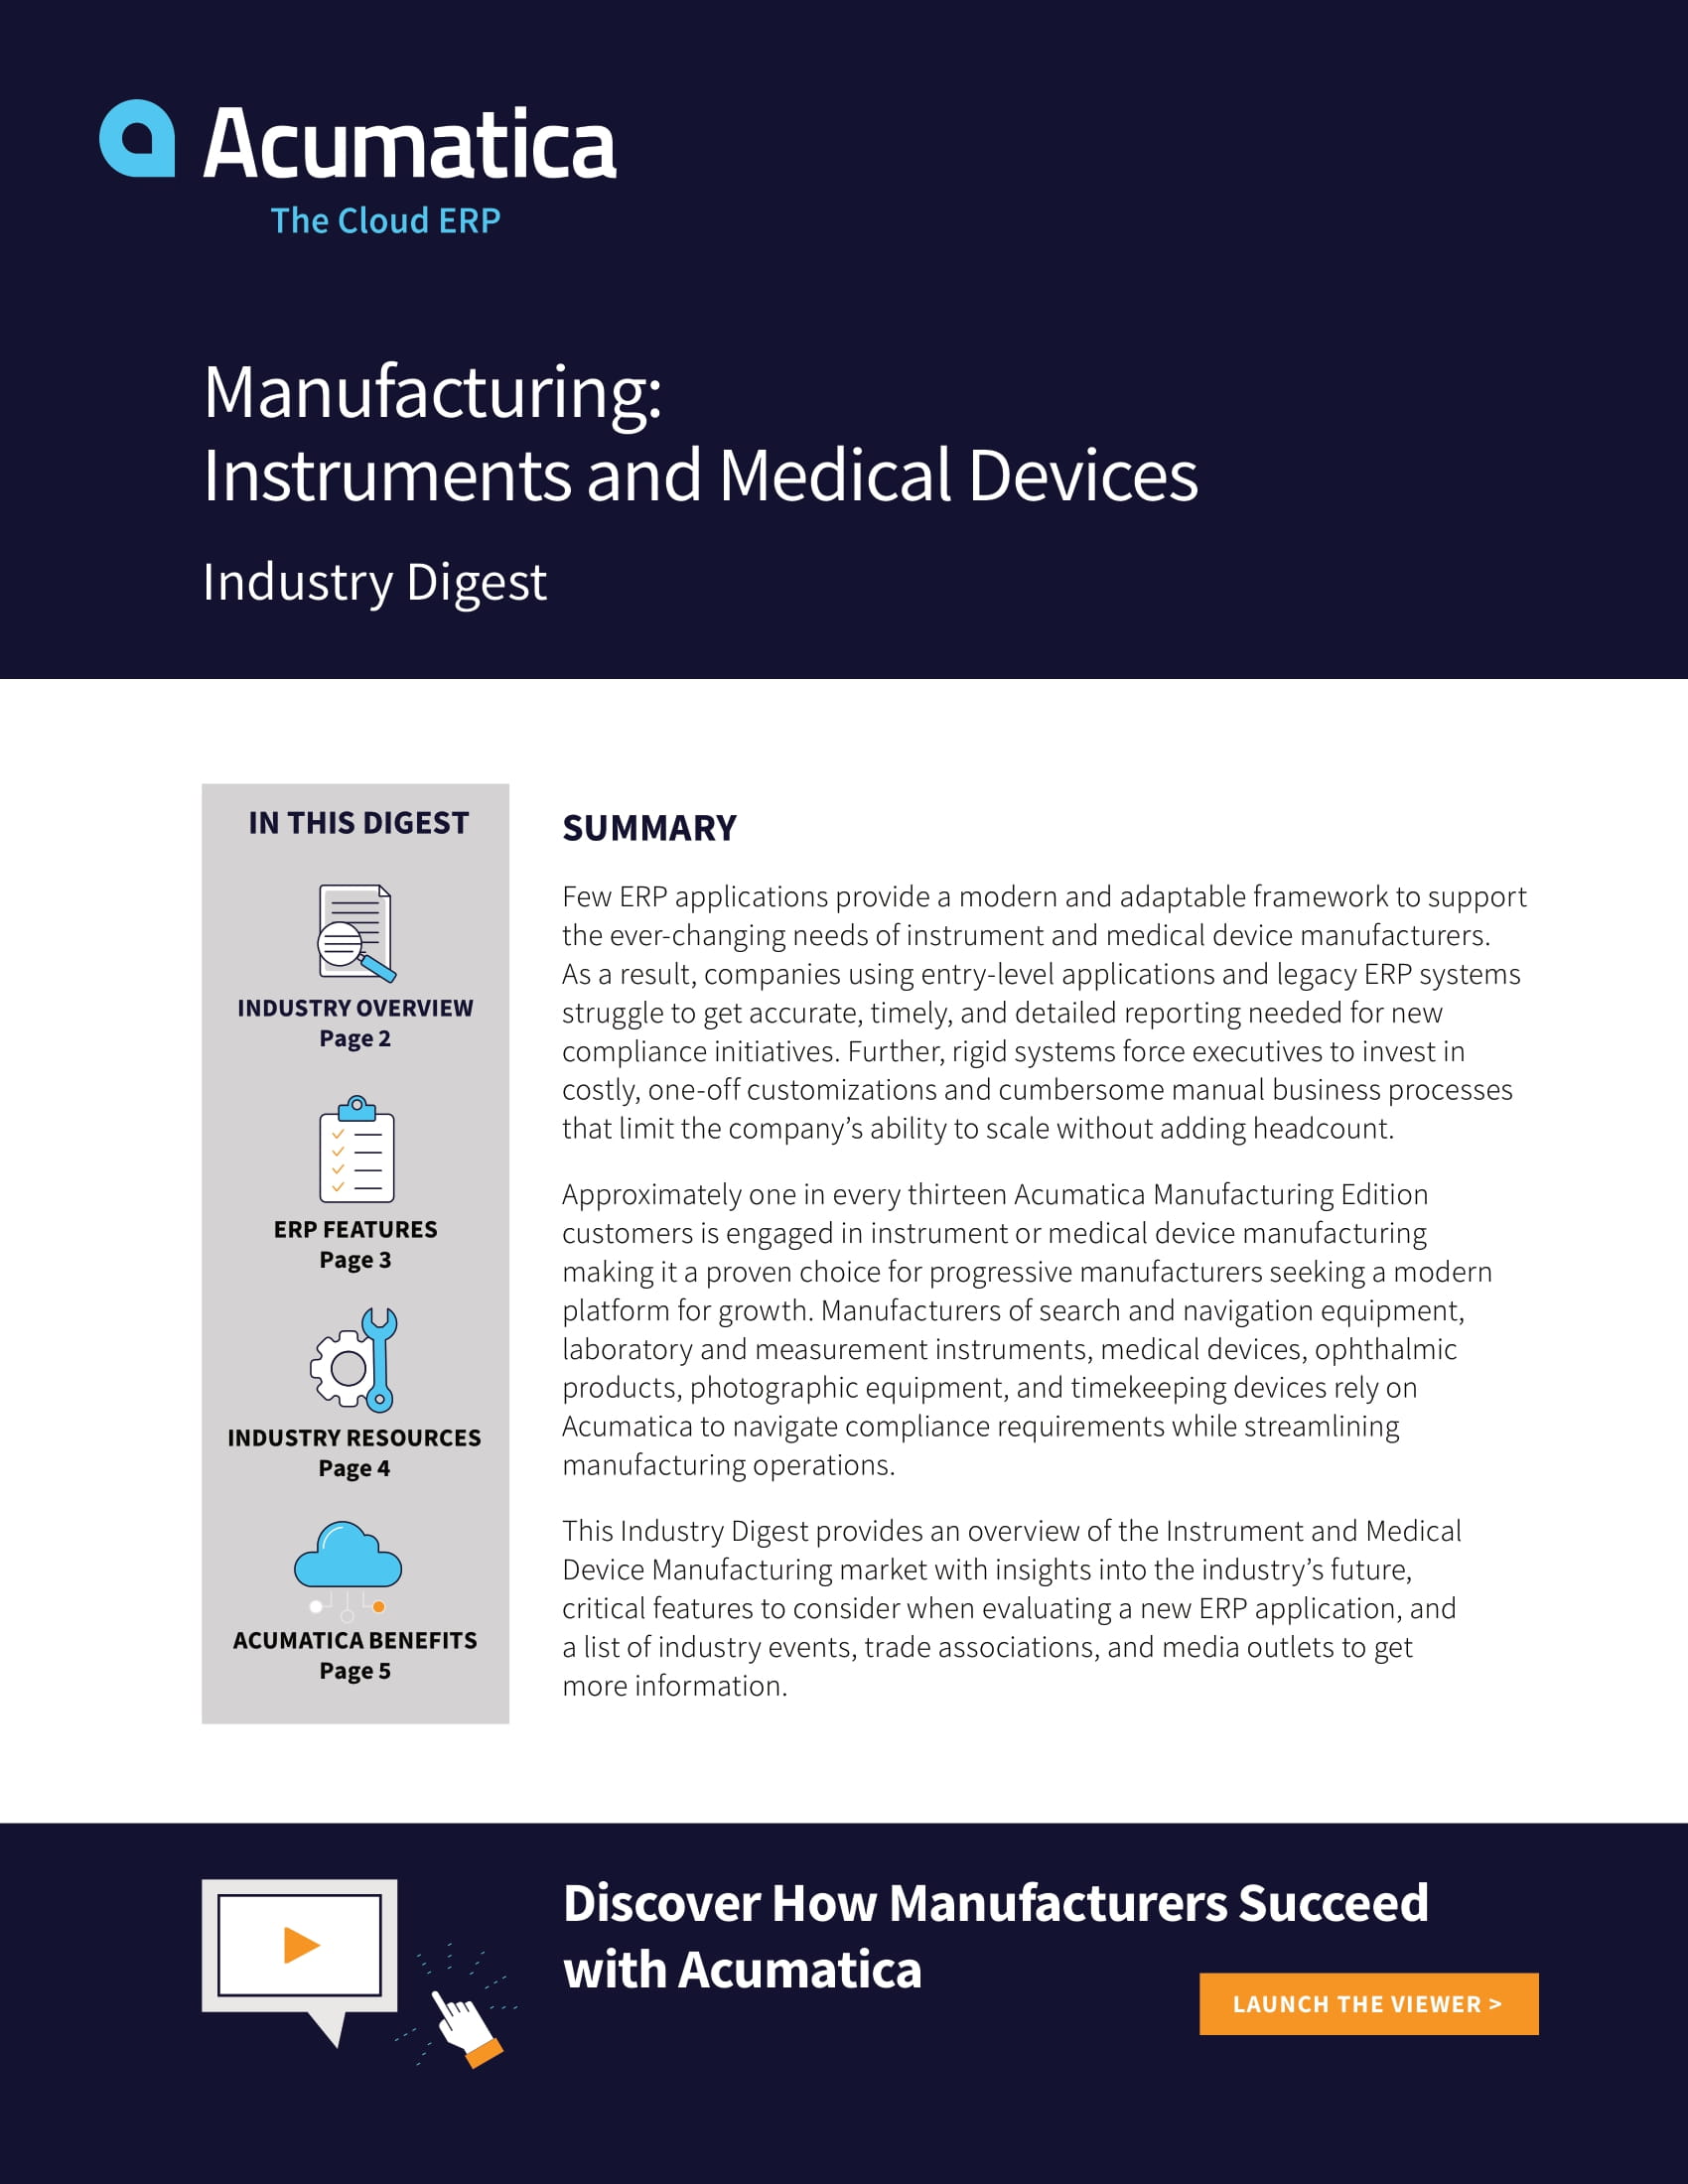 Por qué los fabricantes de instrumentos y dispositivos médicos necesitan una solución ERP moderna